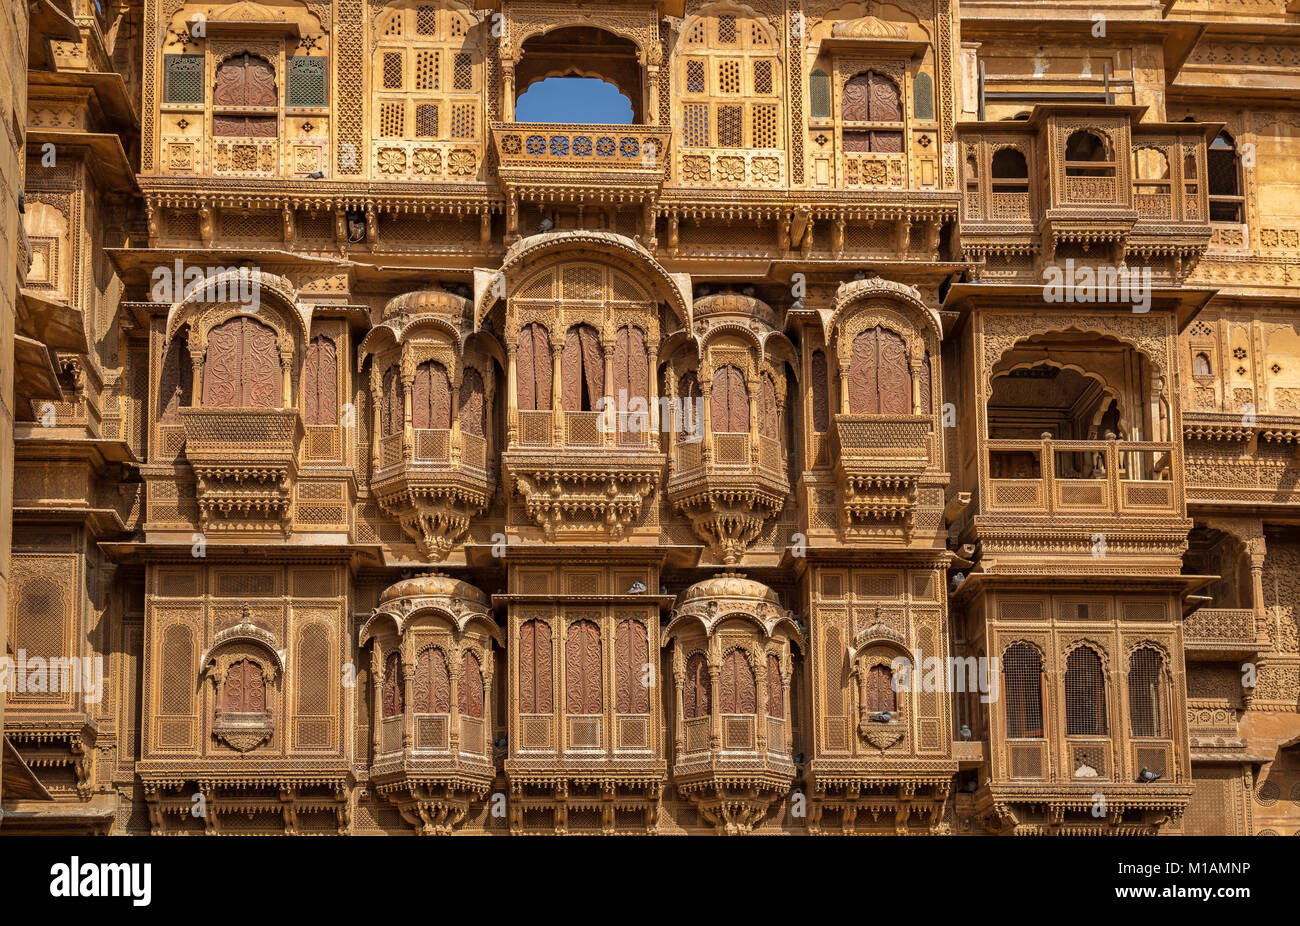 Rajasthan Architektur Gebäude - Patwon ki Haveli. Eine schön gestaltete königliche Residenzschloss Gebäude in Jaisalmer, Rajasthan. Stockfoto